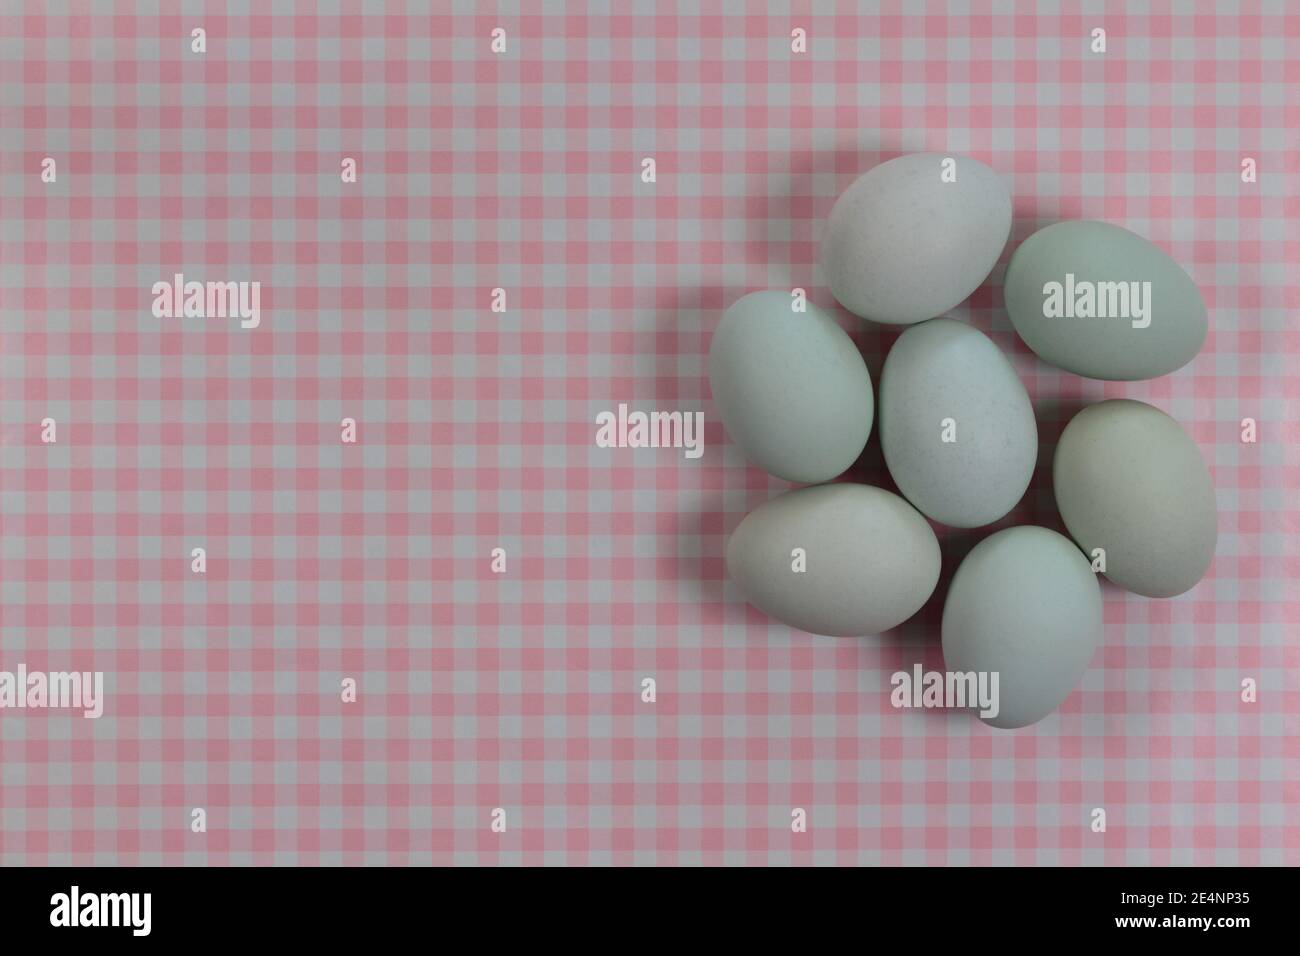 Gruppierung von blauen Erbstück Eier auf einem rosa und weißen Gingham-Check-Hintergrund mit Copy Space, Ostern Thema, Kochen, Küche Thema, Baby-Mädchen Ansager Stockfoto